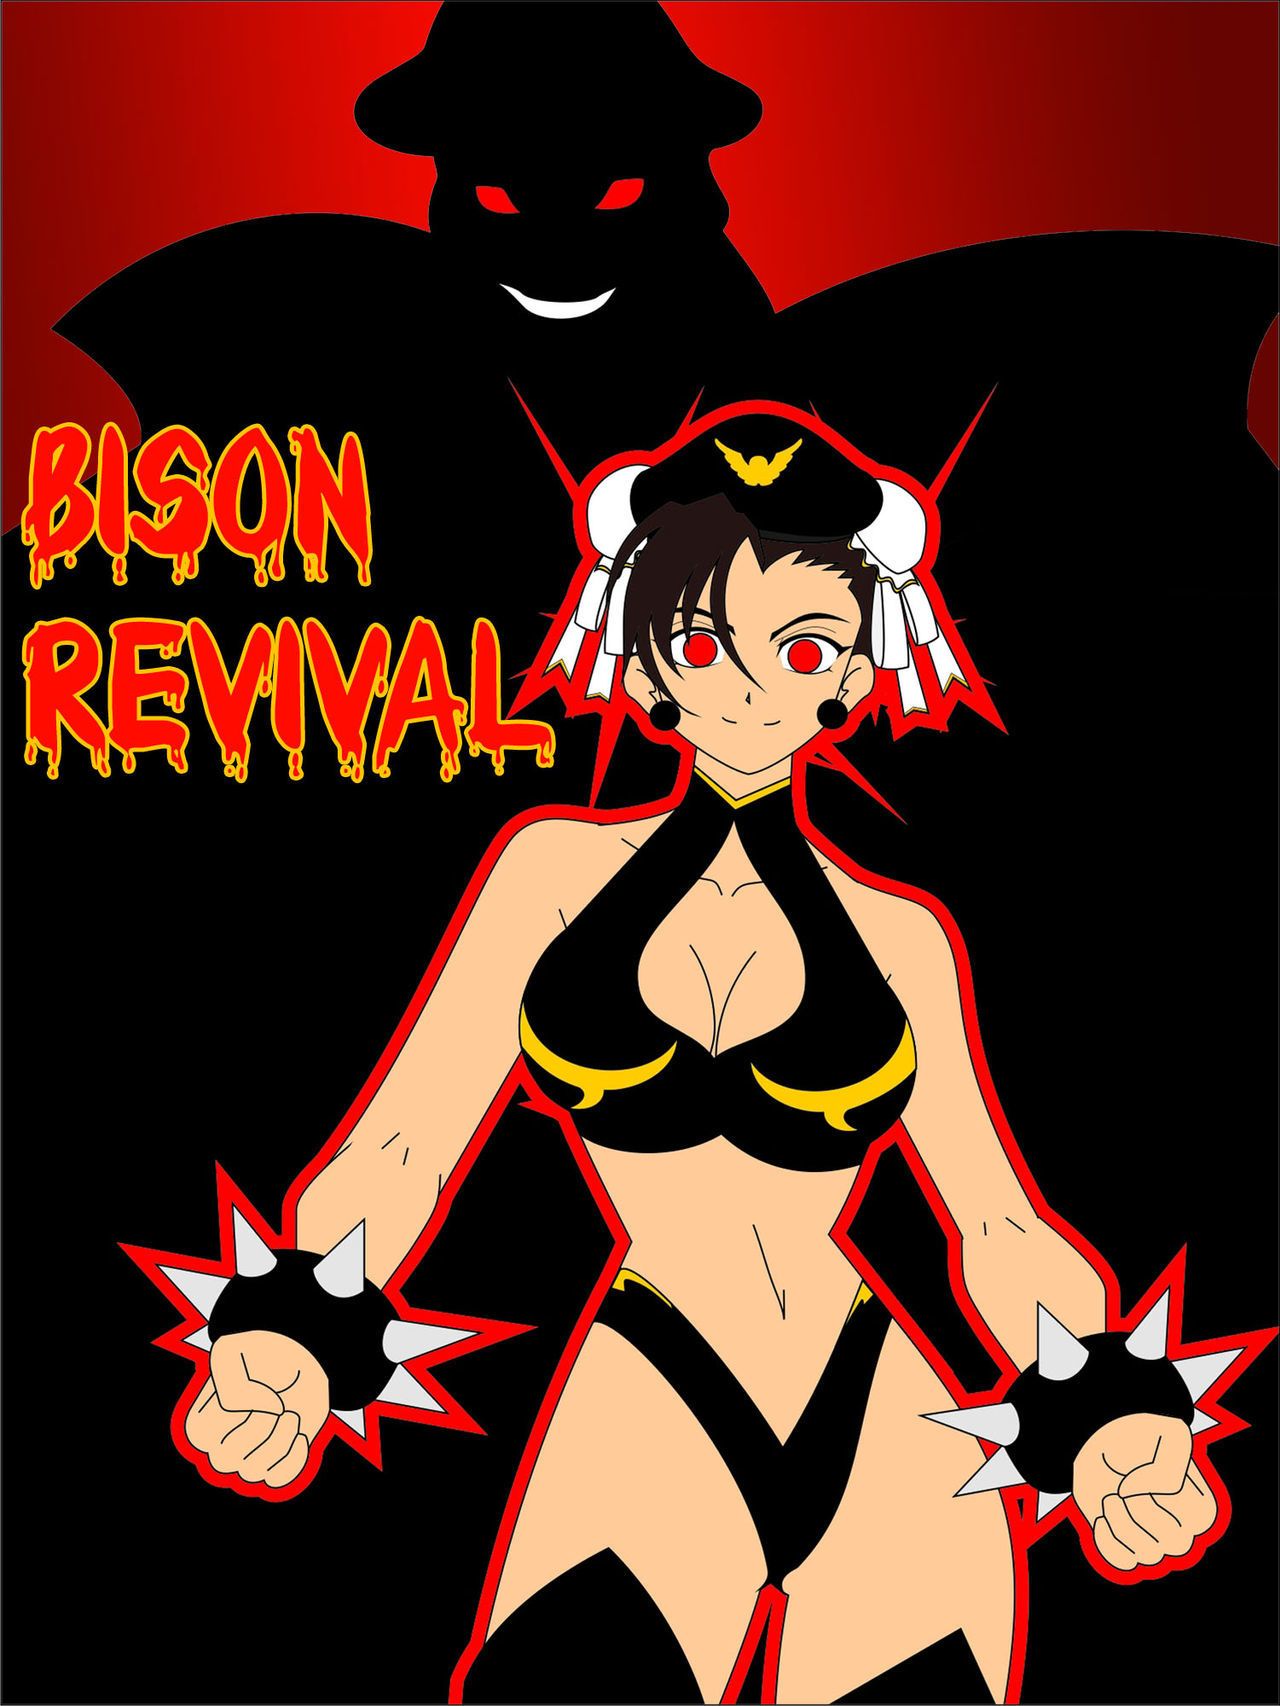 Jimryu Bison Revival (Darkstalkers- Street Fighter)